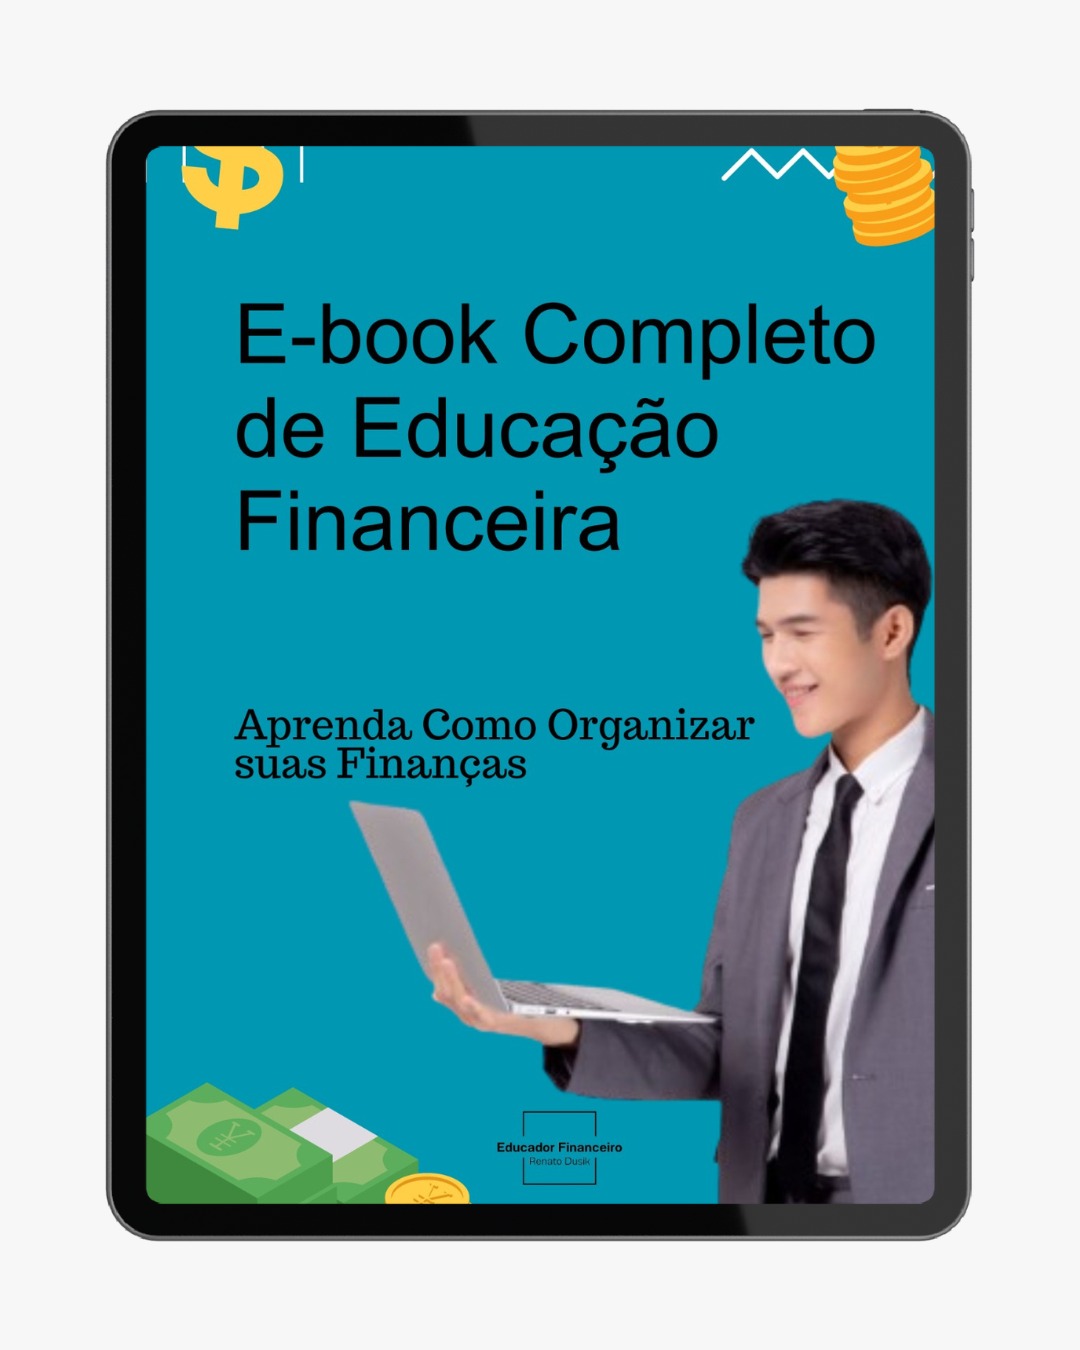 E-book Completo de Educação Financeira